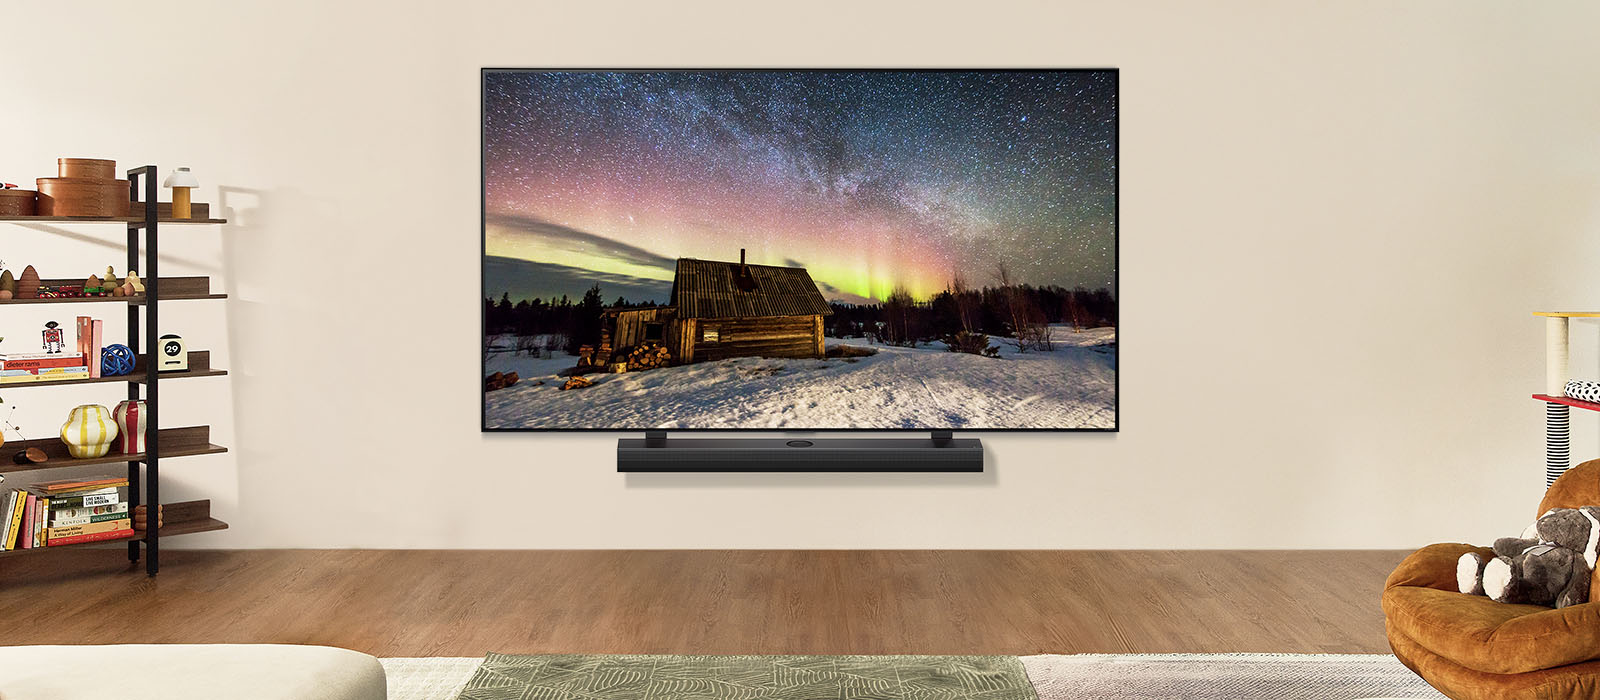 白天時位於現代客廳空間的 LG TV和 LG Soundbar。極光螢幕影像隨著理想亮度顯示。